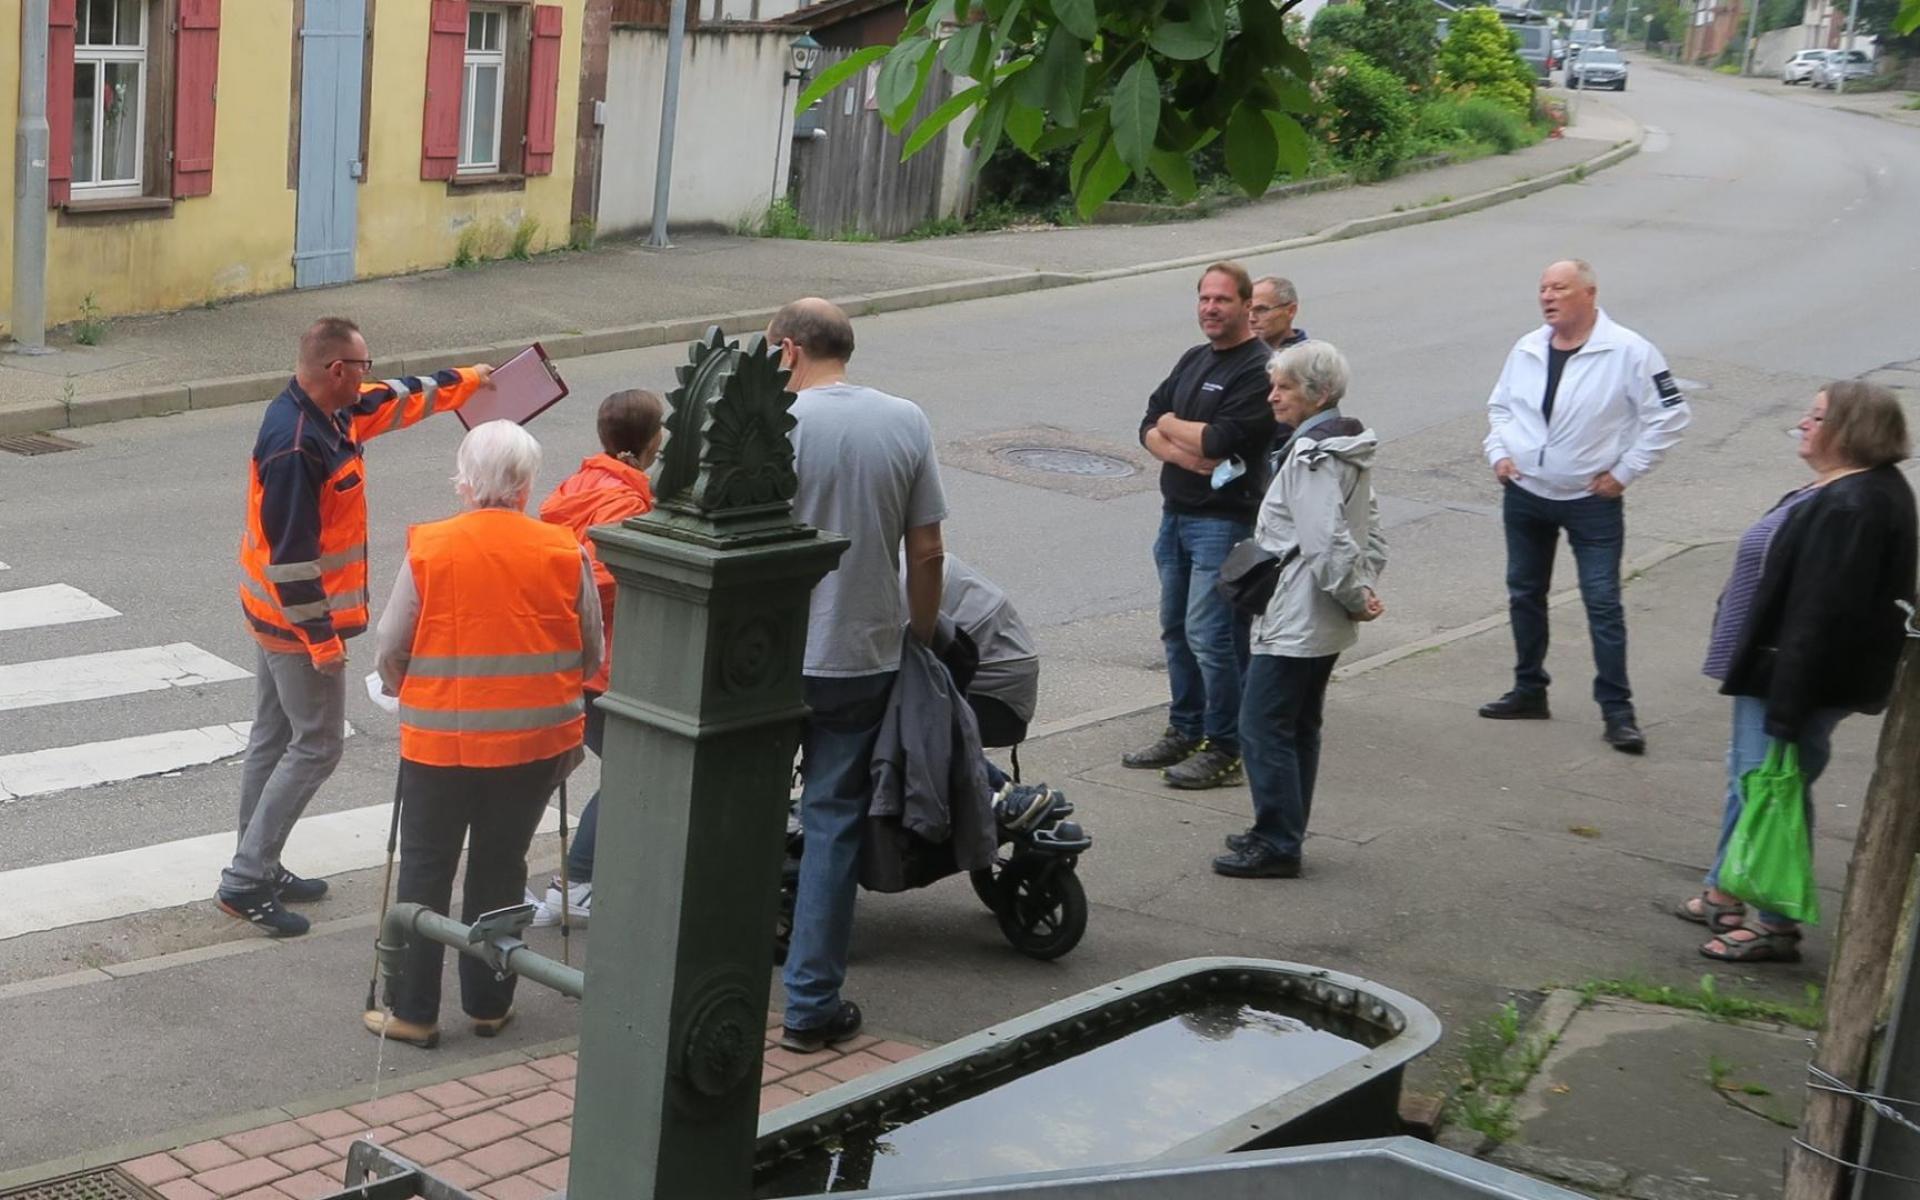 Gruppe besichtigt Heimsheim zum erfassen der Barrierefreiheit